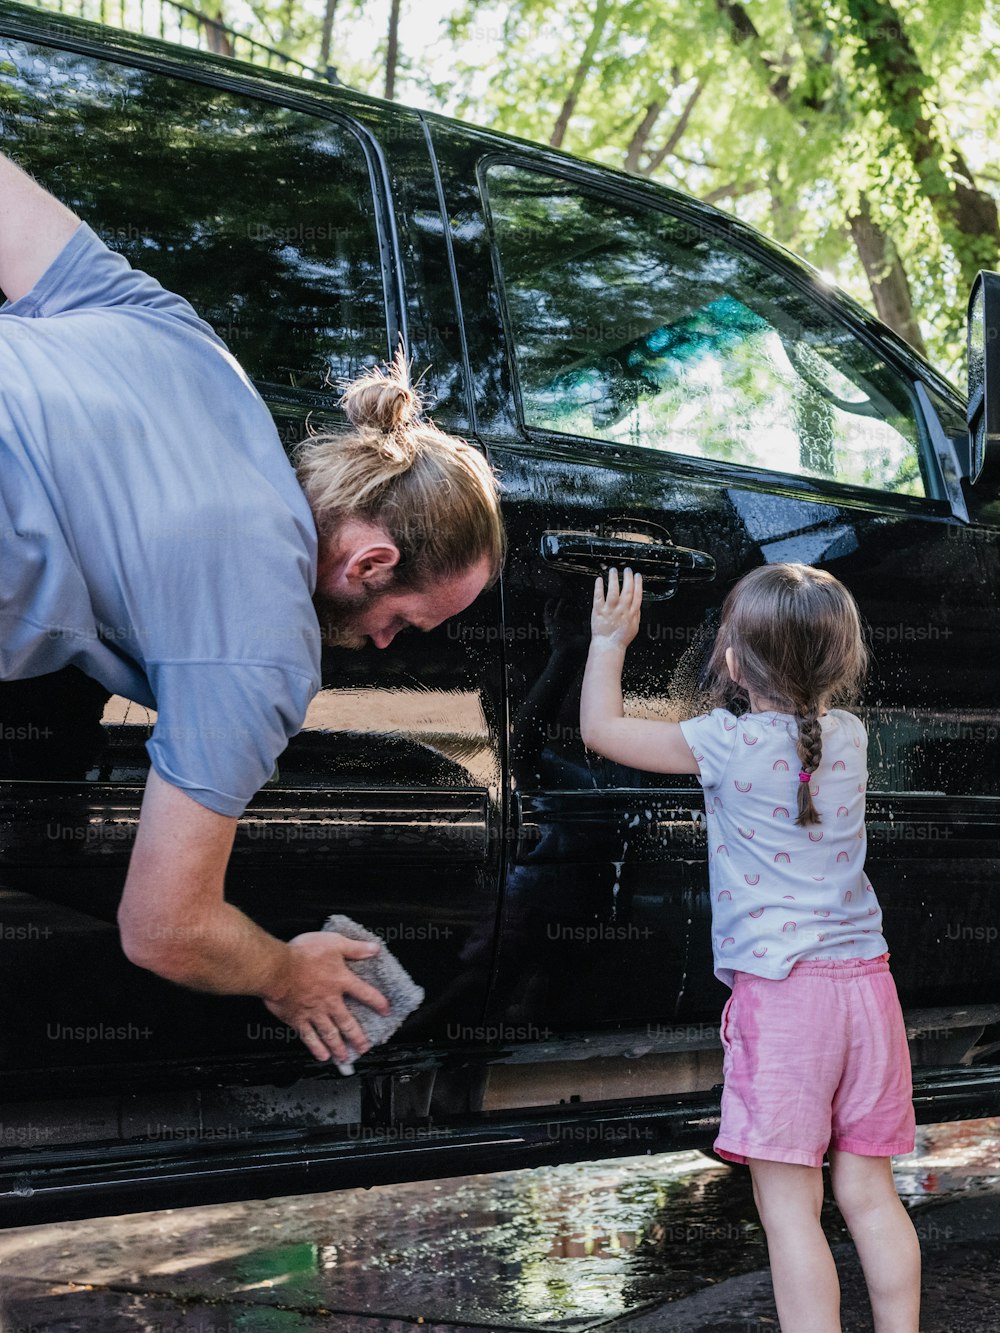 Un hombre ayudando a una niña a salir de una camioneta negra